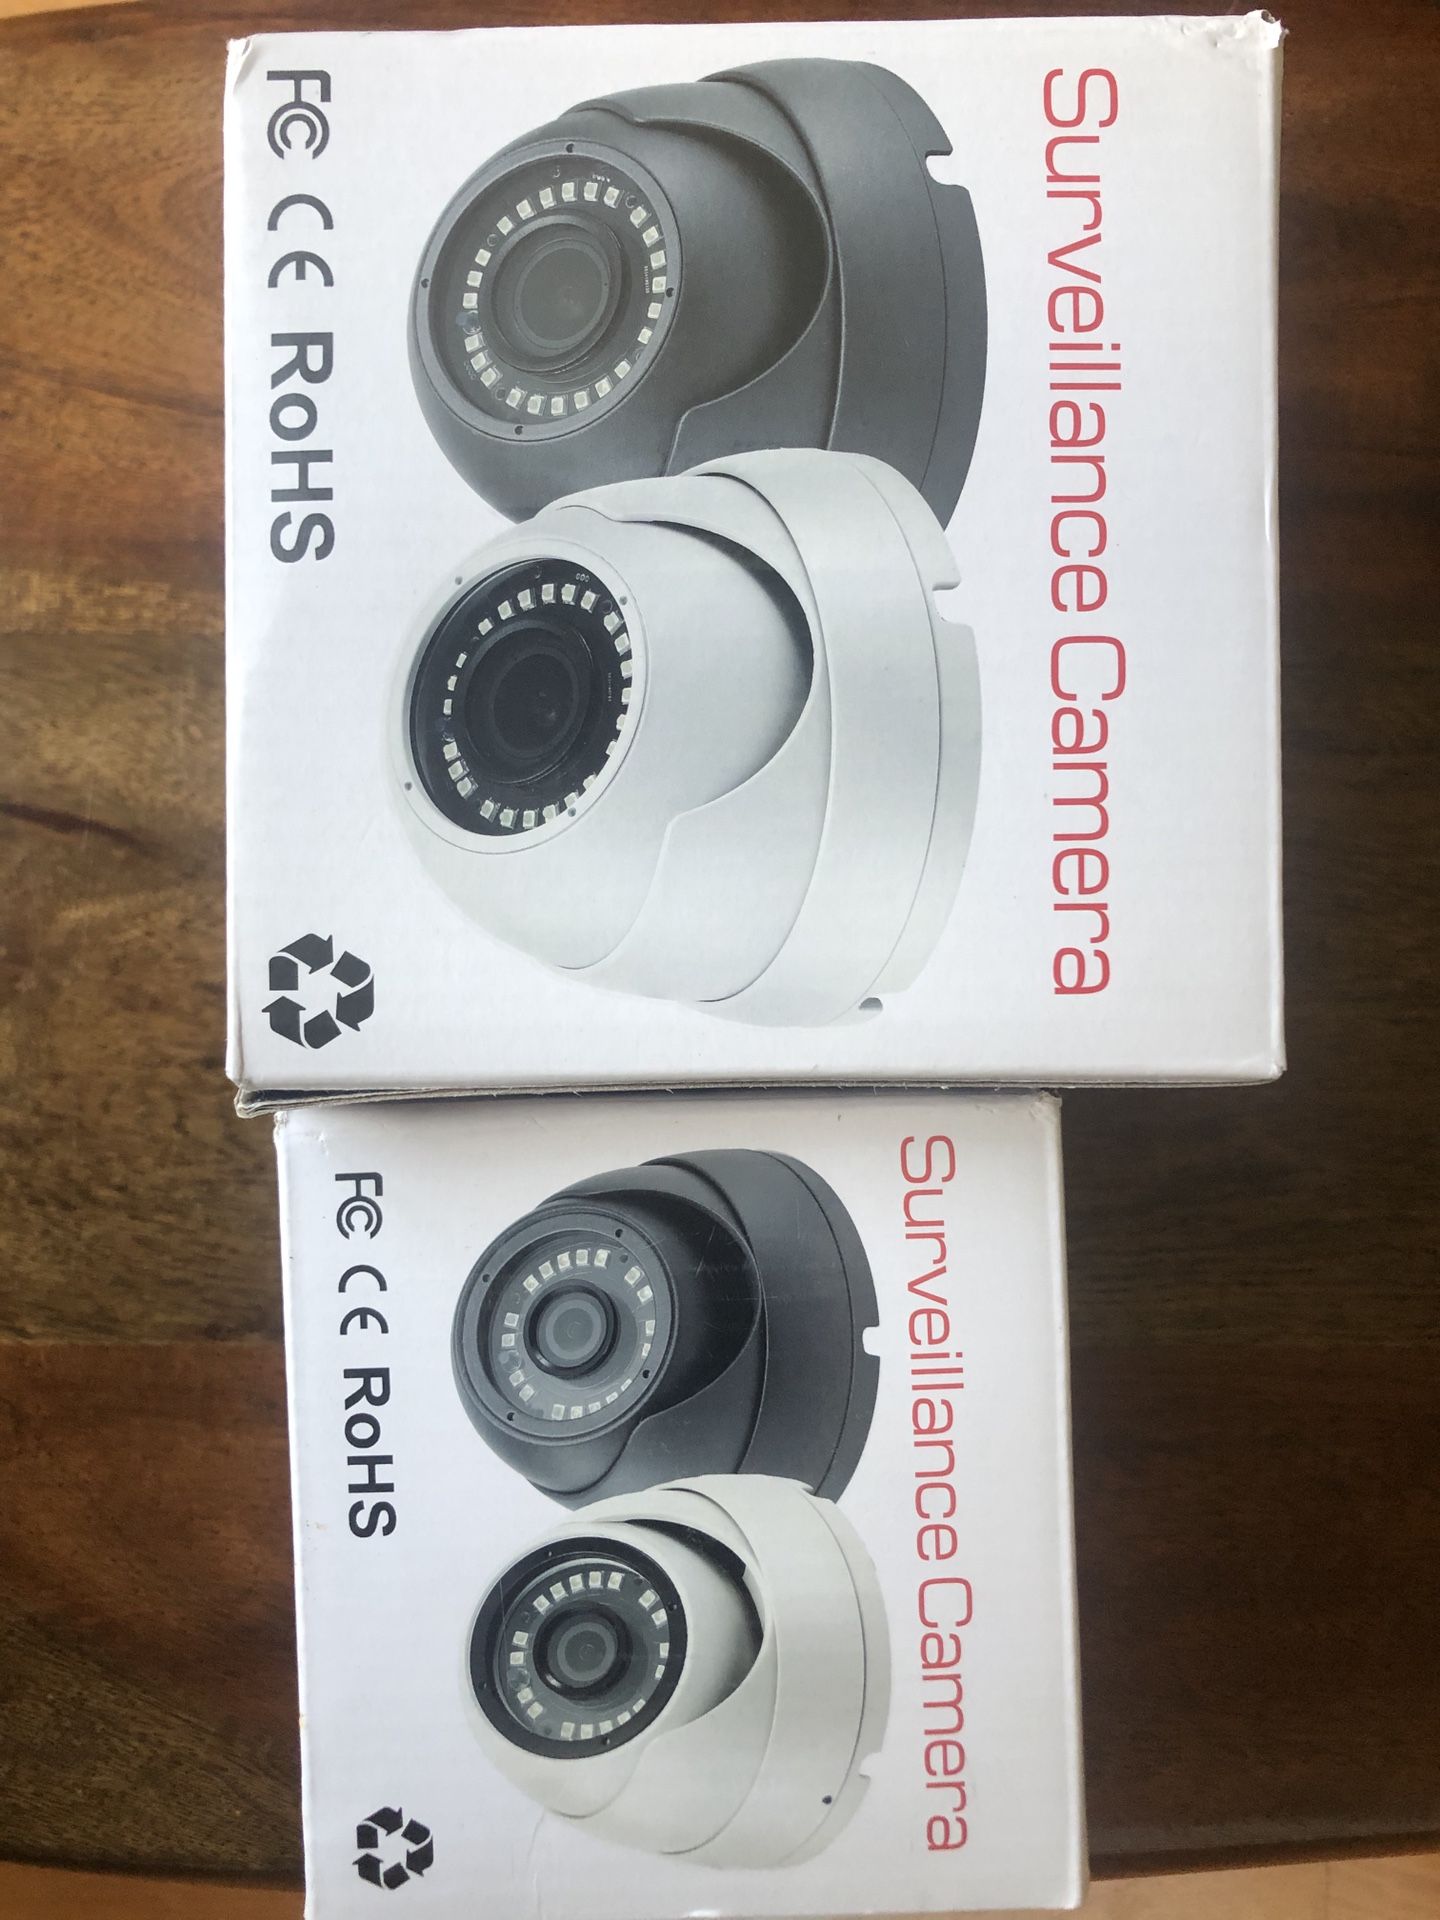 Surveillance Camera -2 cameras 1 DVR $250